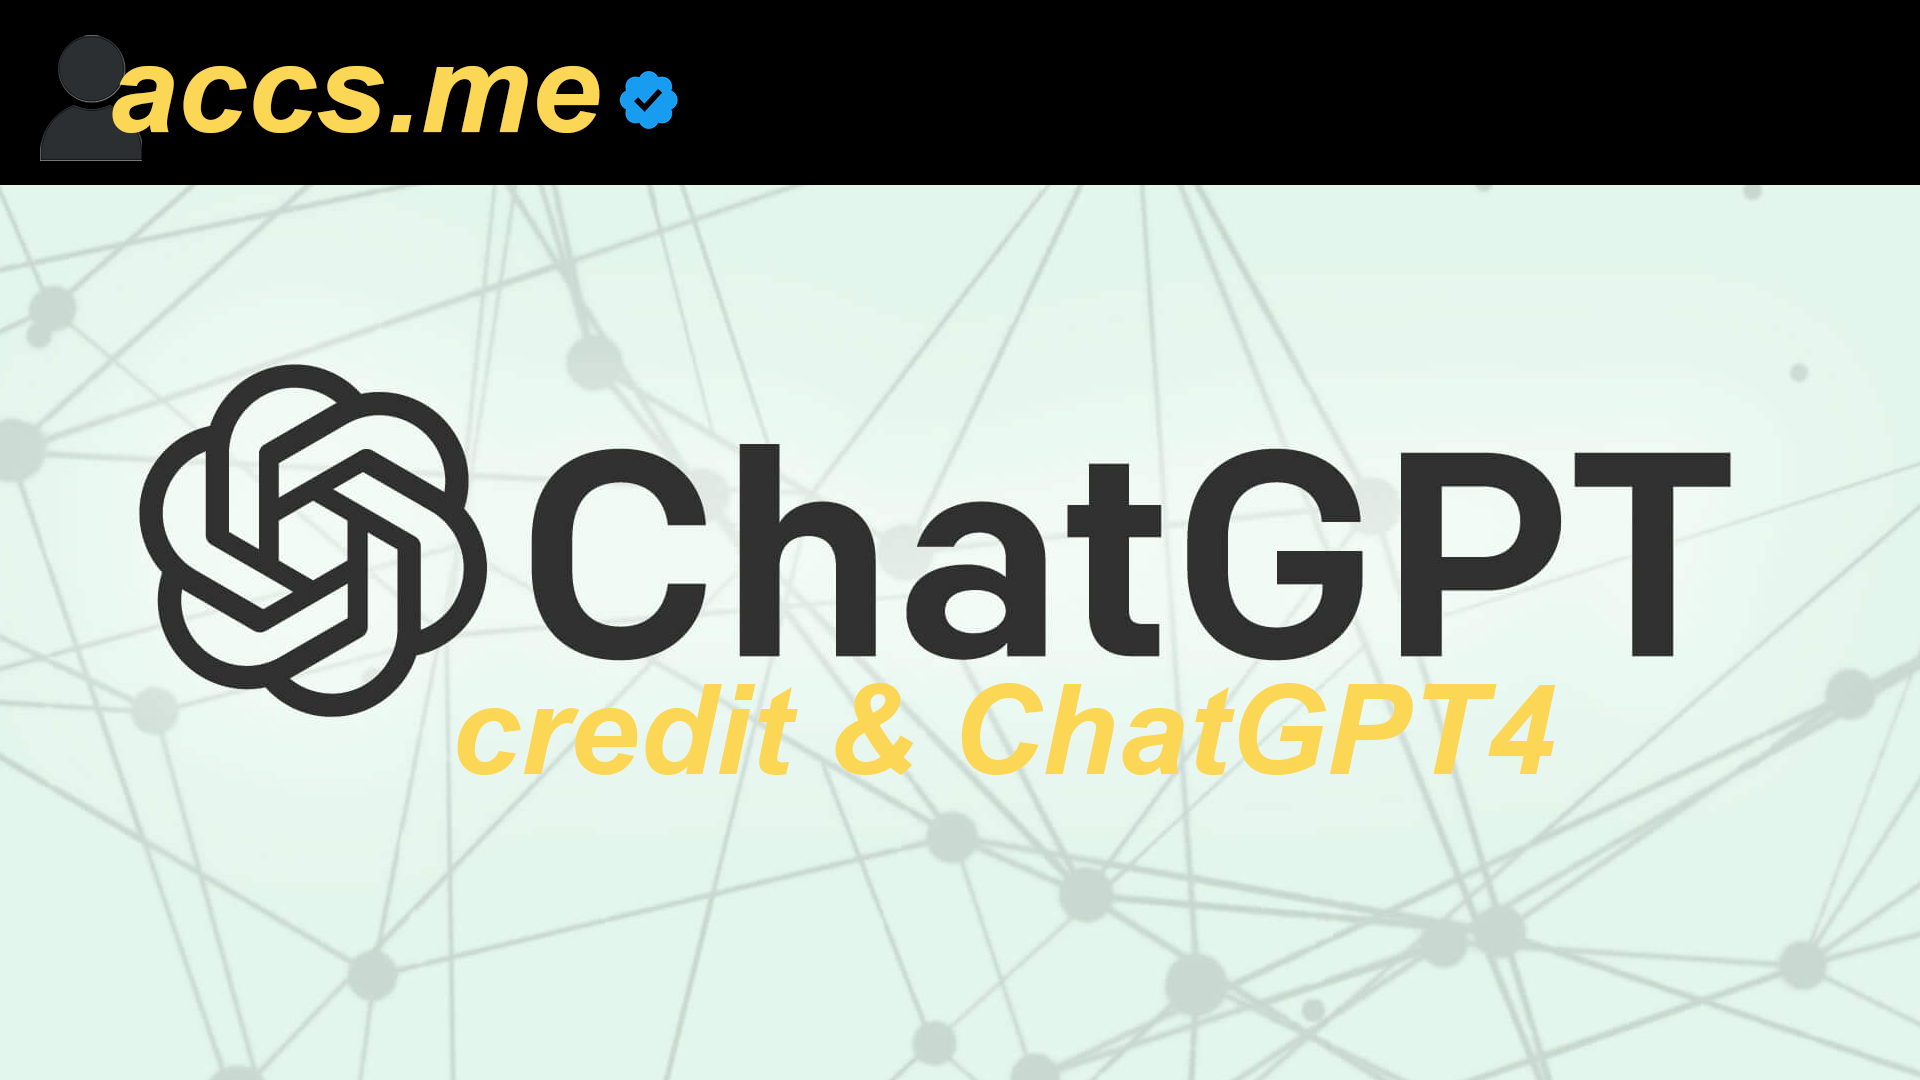 ChatGPT Accounts [Credit & GPT4.0 Accounts]